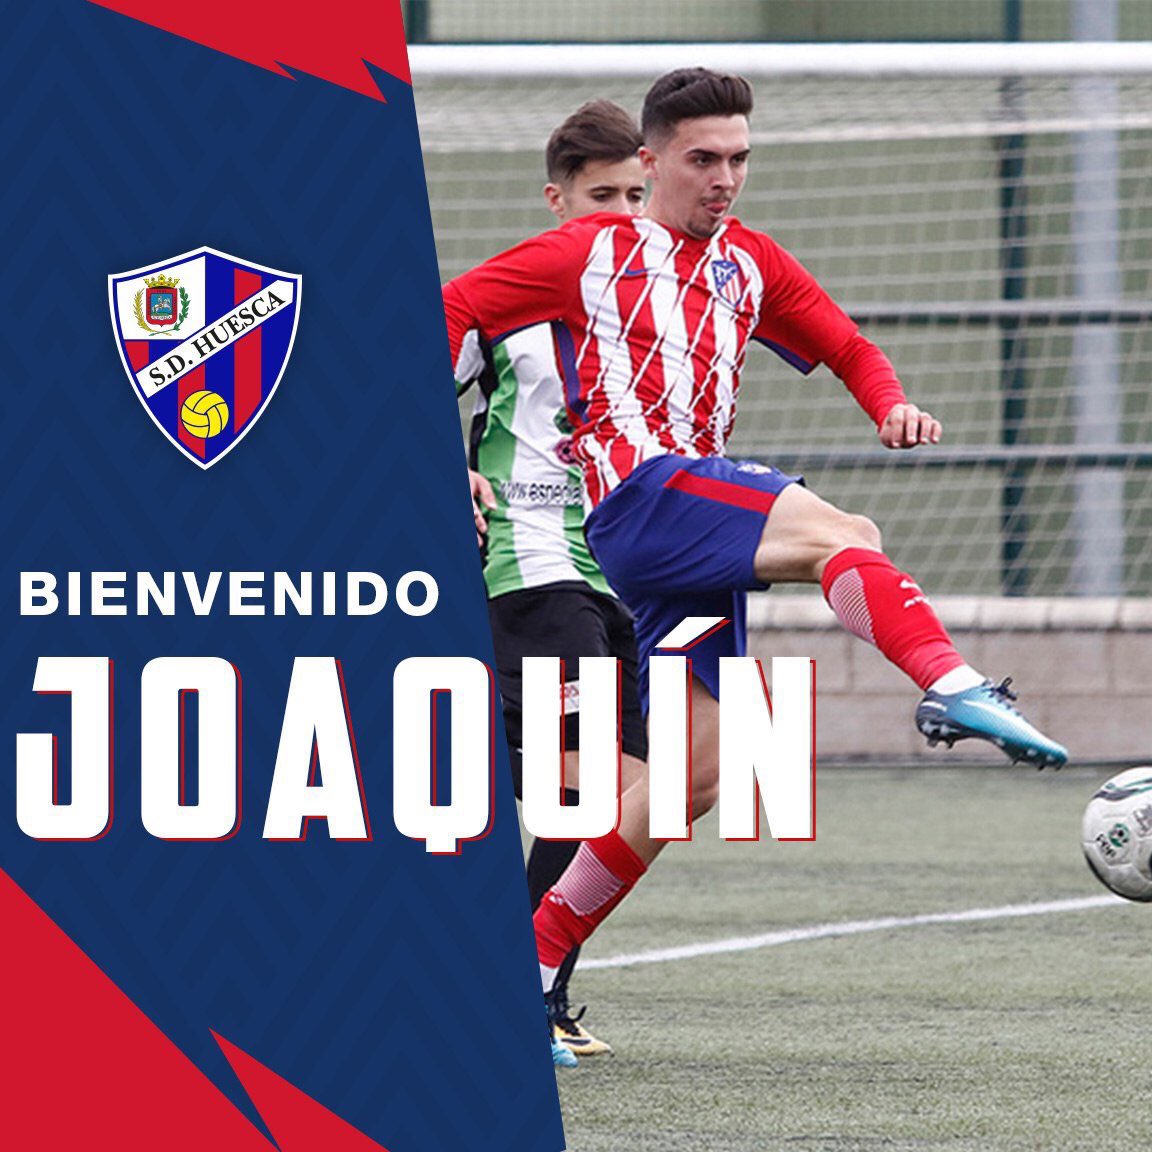 Feliz de anunciaros mi fichaje por la @SDHuesca . Gracias por la confianza y el cariño que recibí estos días por las diferentes redes sociales, nos vemos en la #Liga123!!! ⚽️💙❤️ #JoaquínNoRebla

Joaquín Muñoz